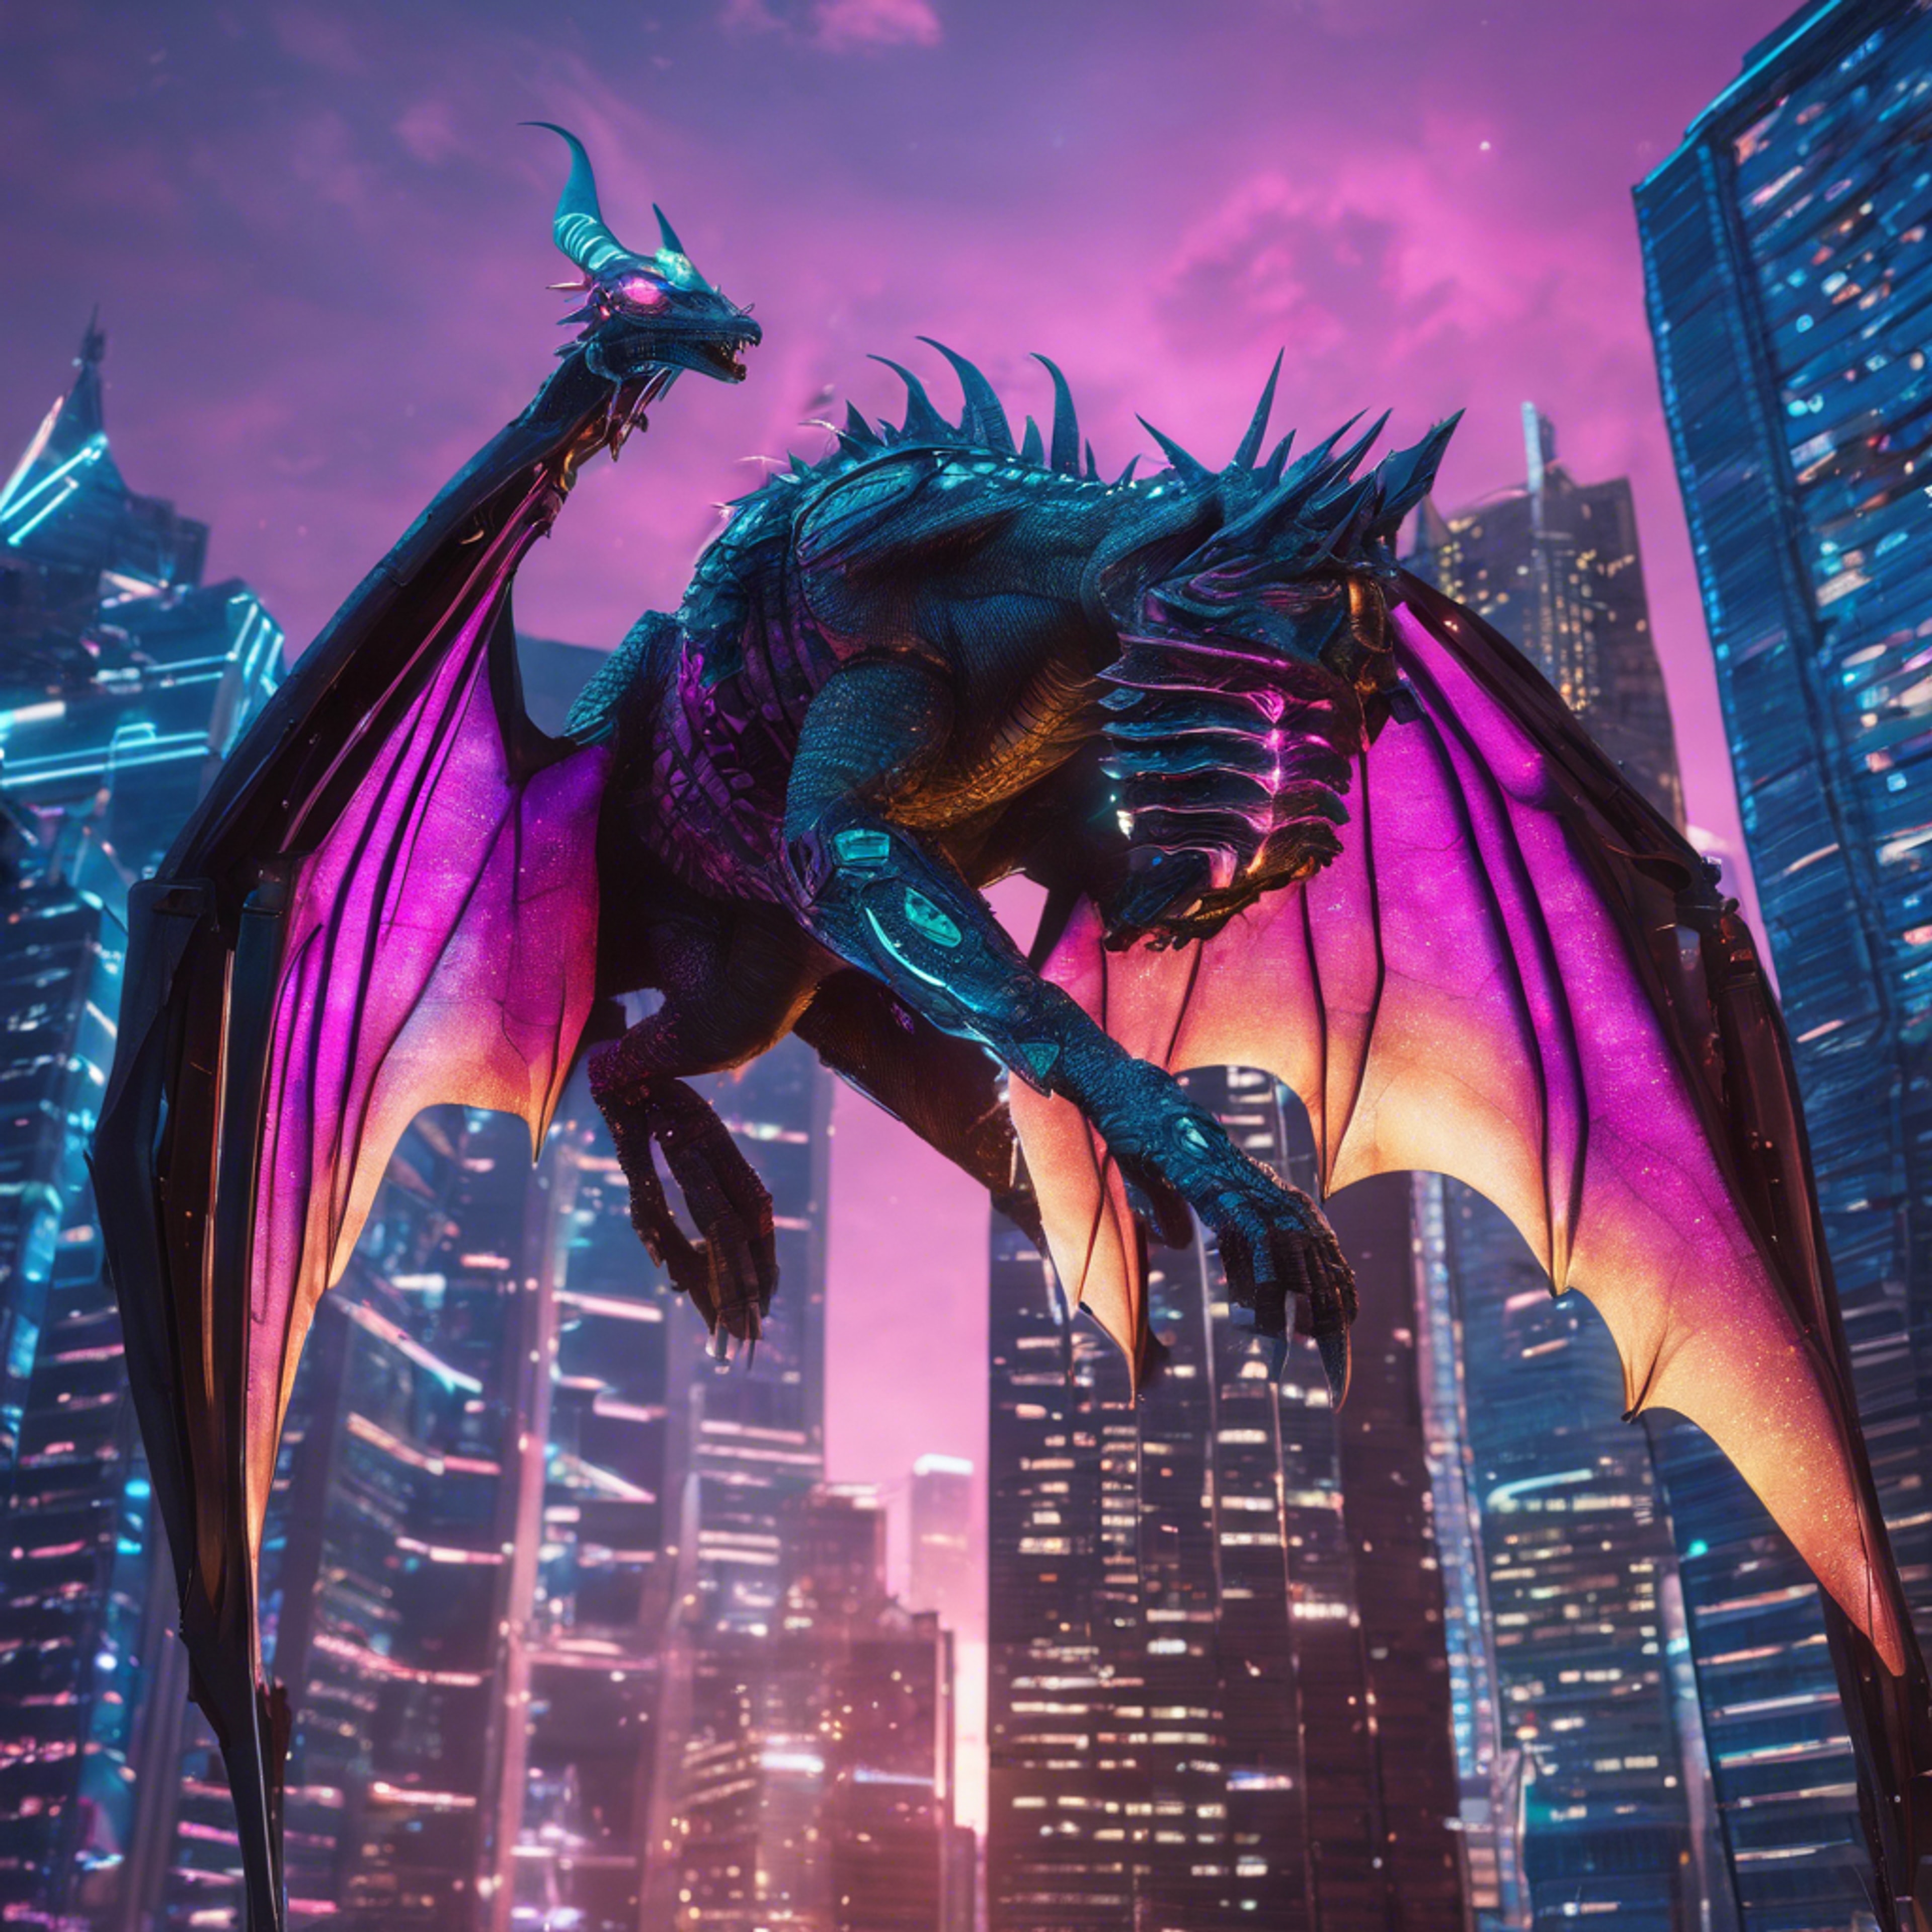 A Y2K themed cybernetic dragon soaring under neon-lit skyscrapers in a digital cityscape. Tapetai[7348722ea6a94b7ba367]